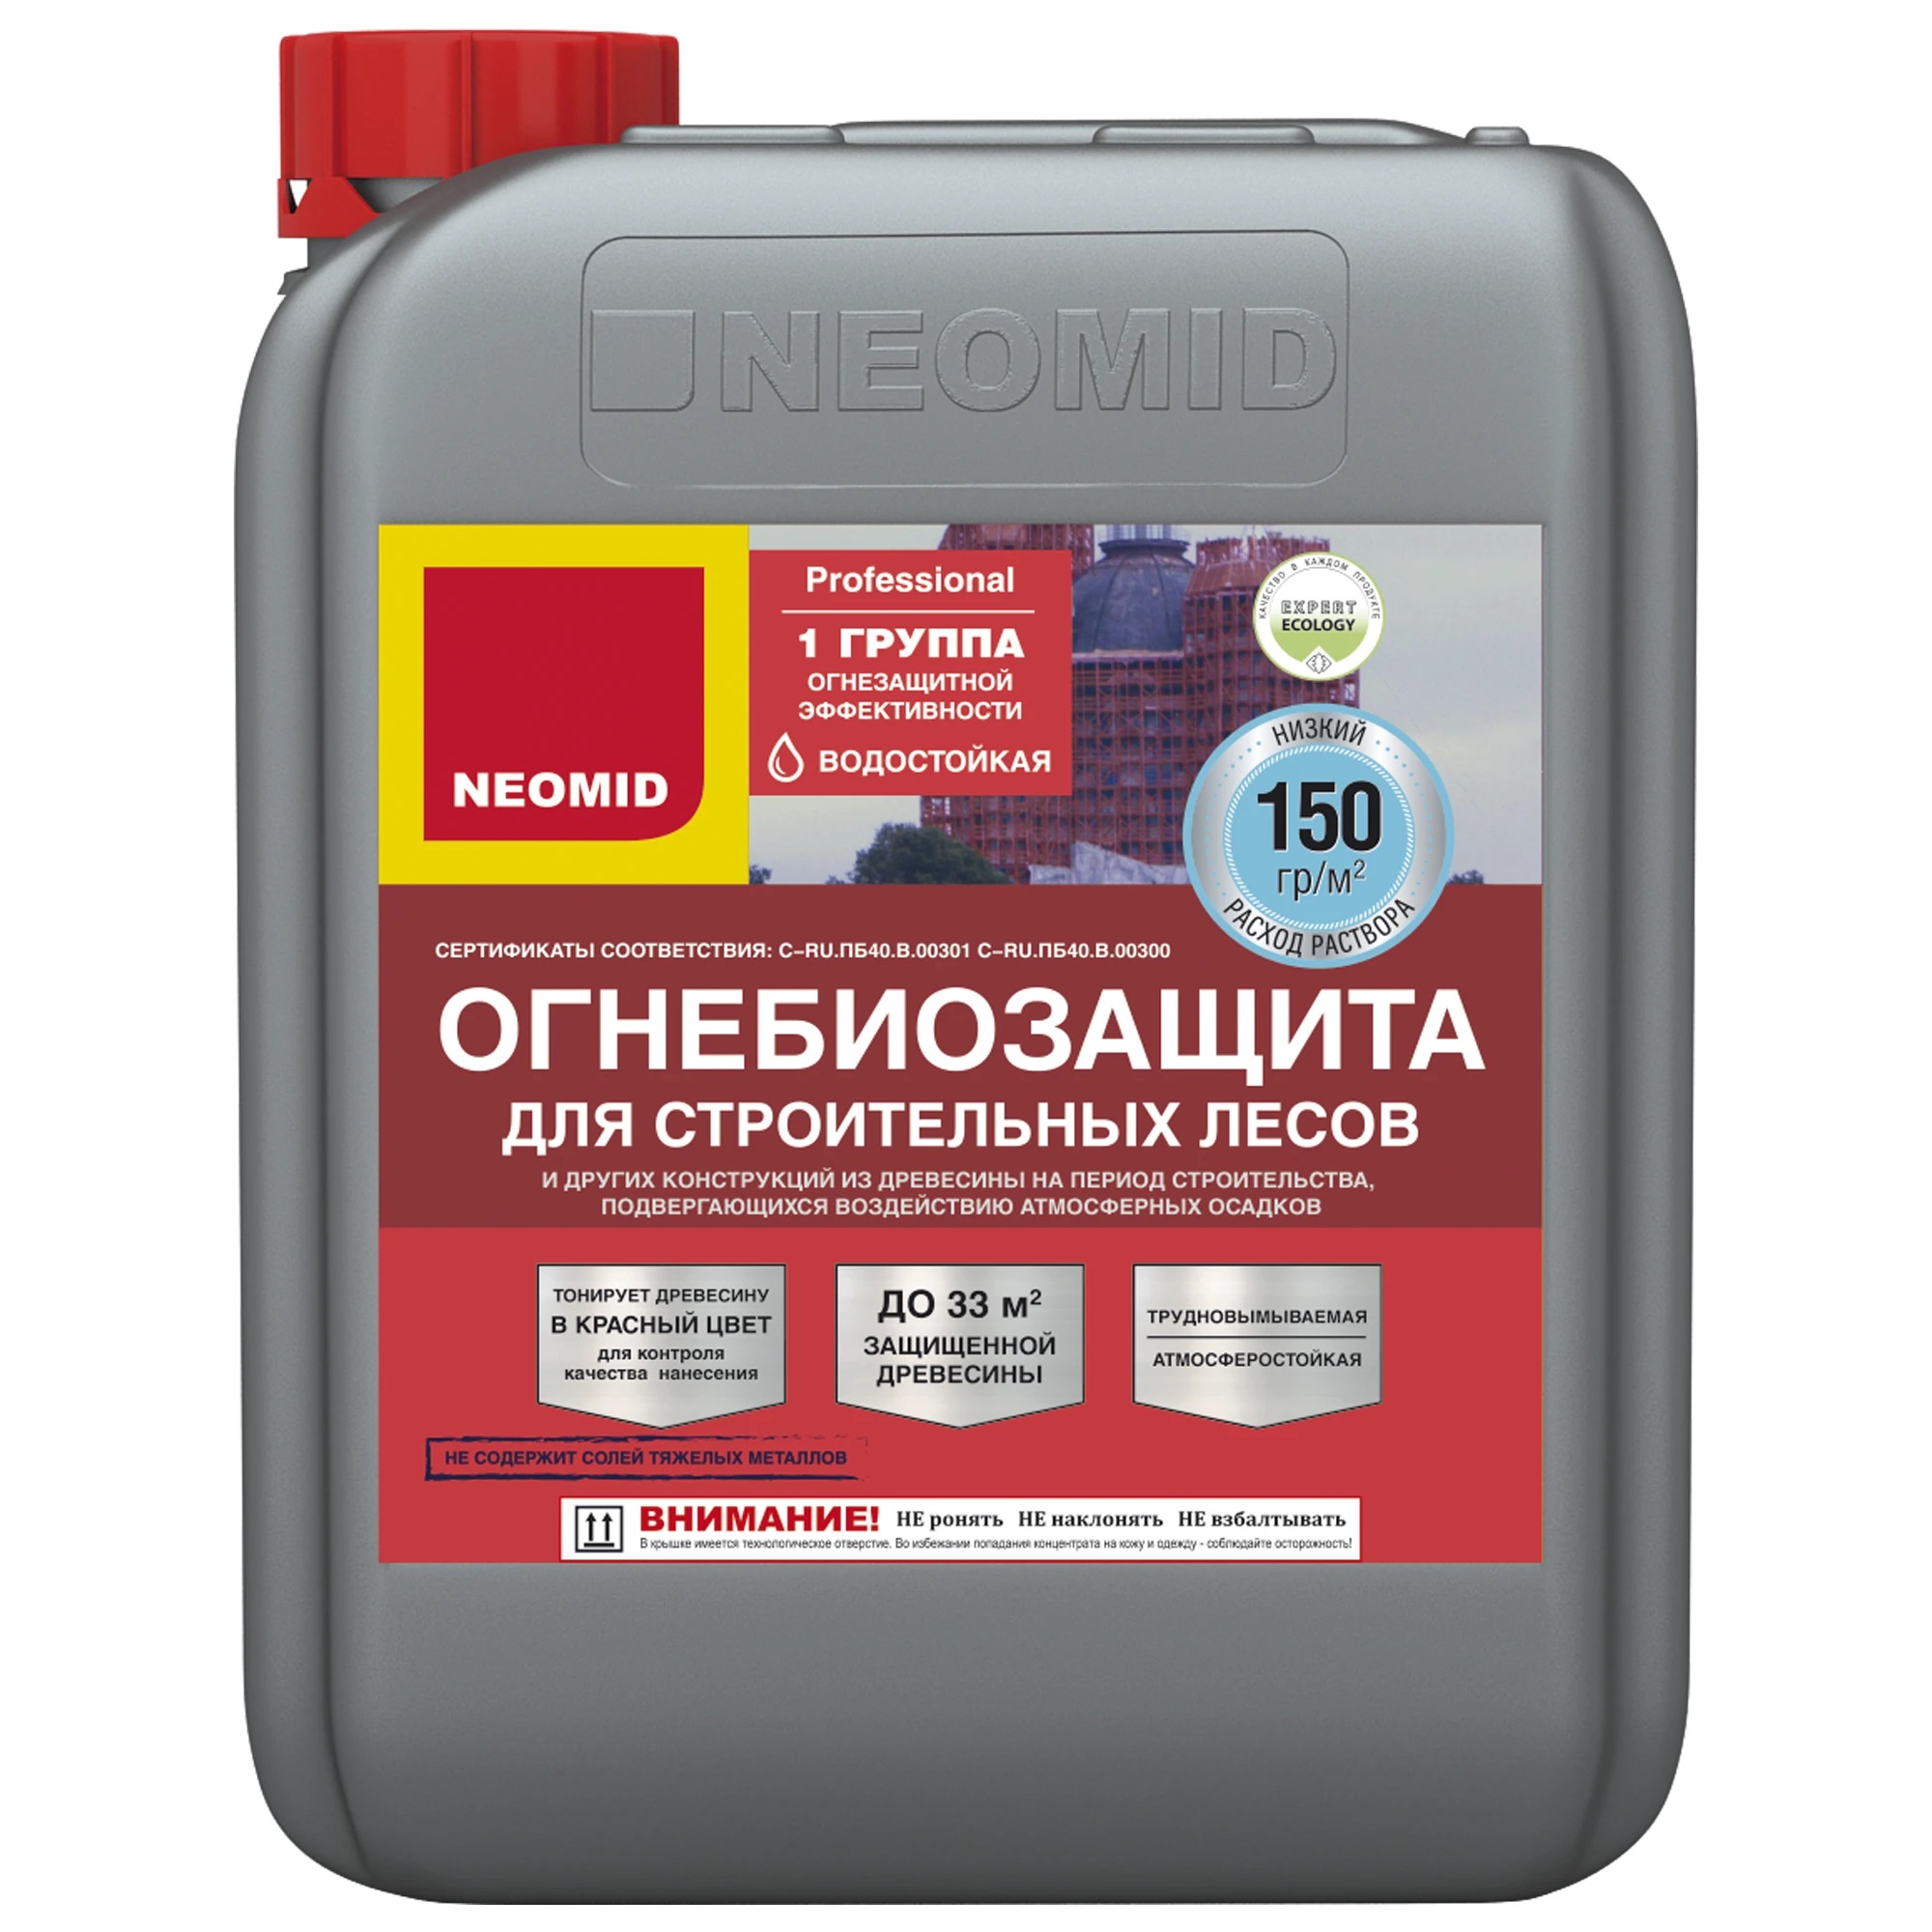 Огнебиозащита для строительных лесов NEOMID - 6 кг.